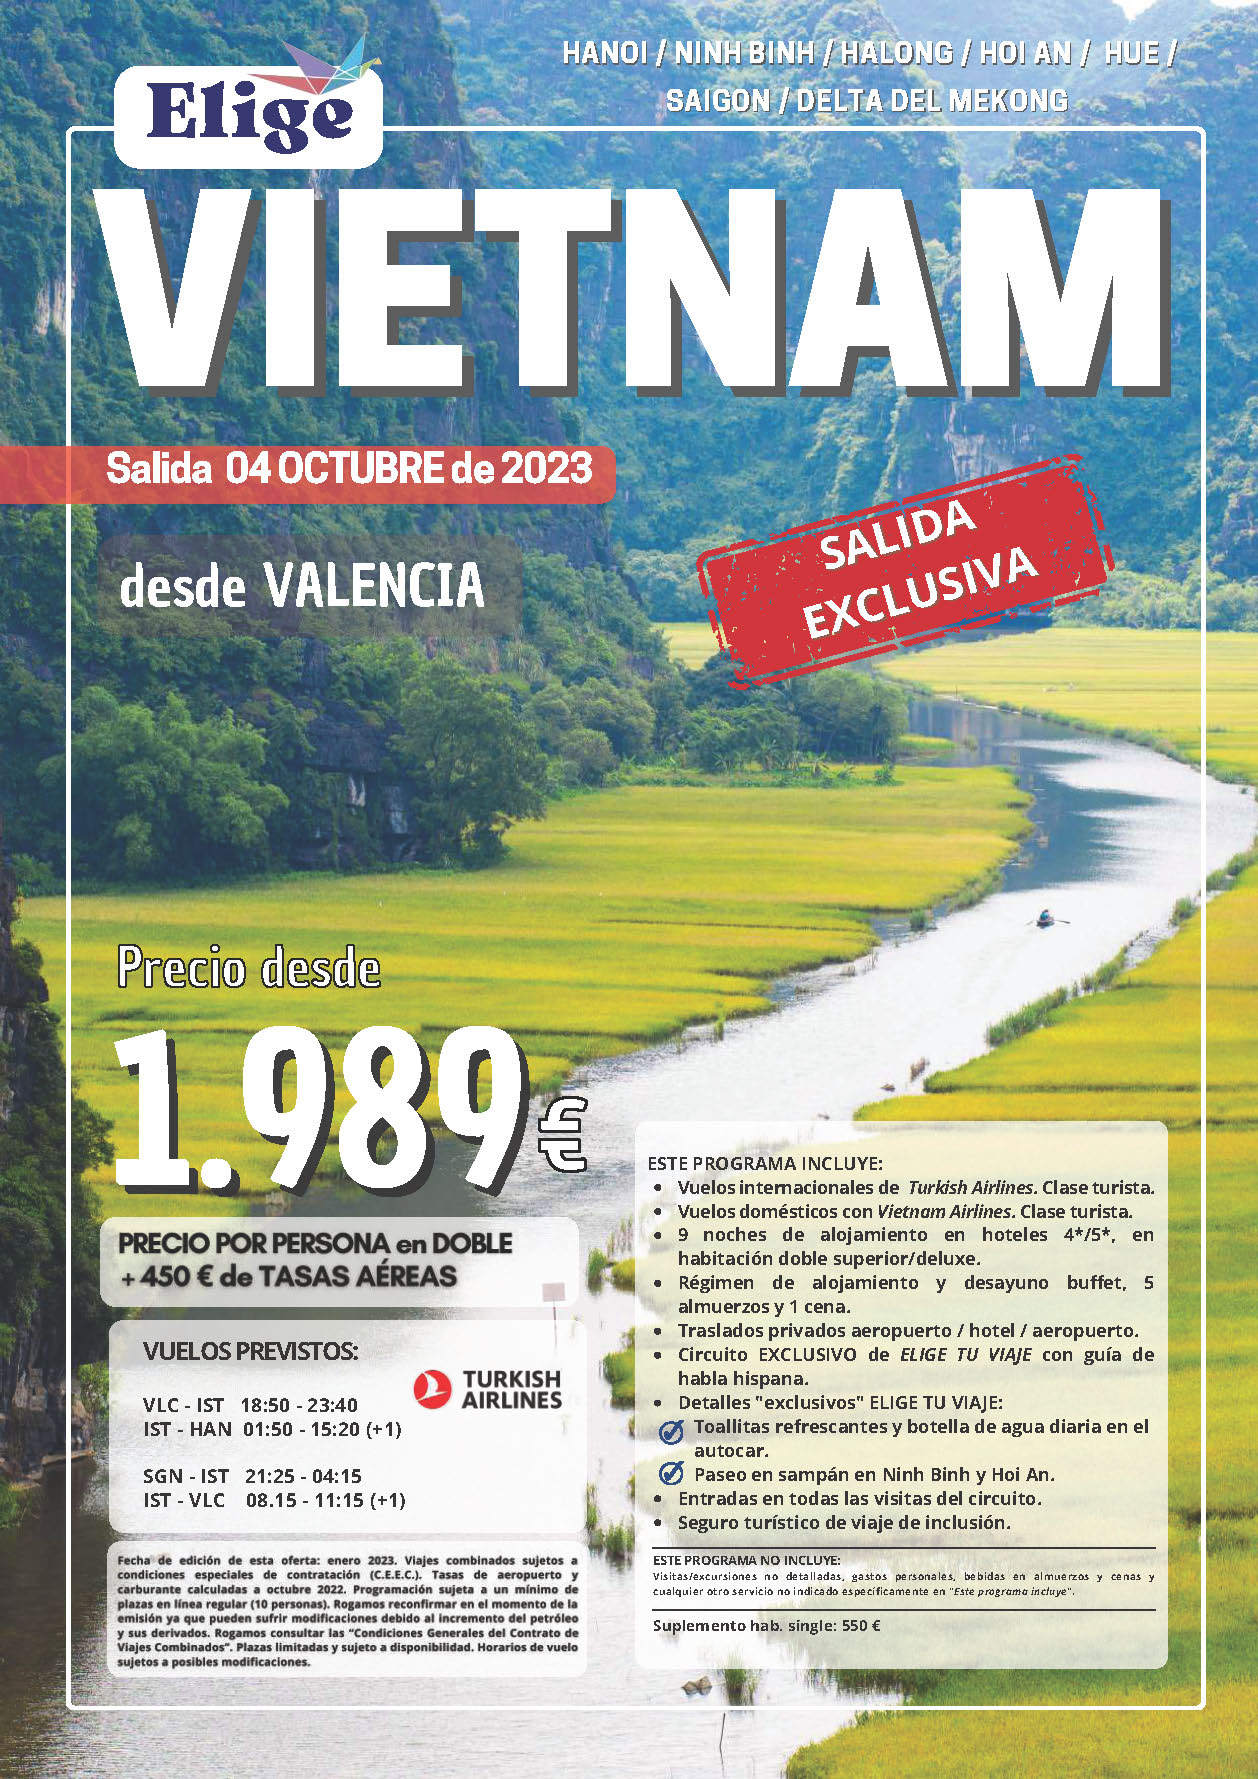 Oferta Elige tu Viaje circuito Vietnam 12 dias salidas desde Valencia Octubre 2023 vuelos Turkish Airlines